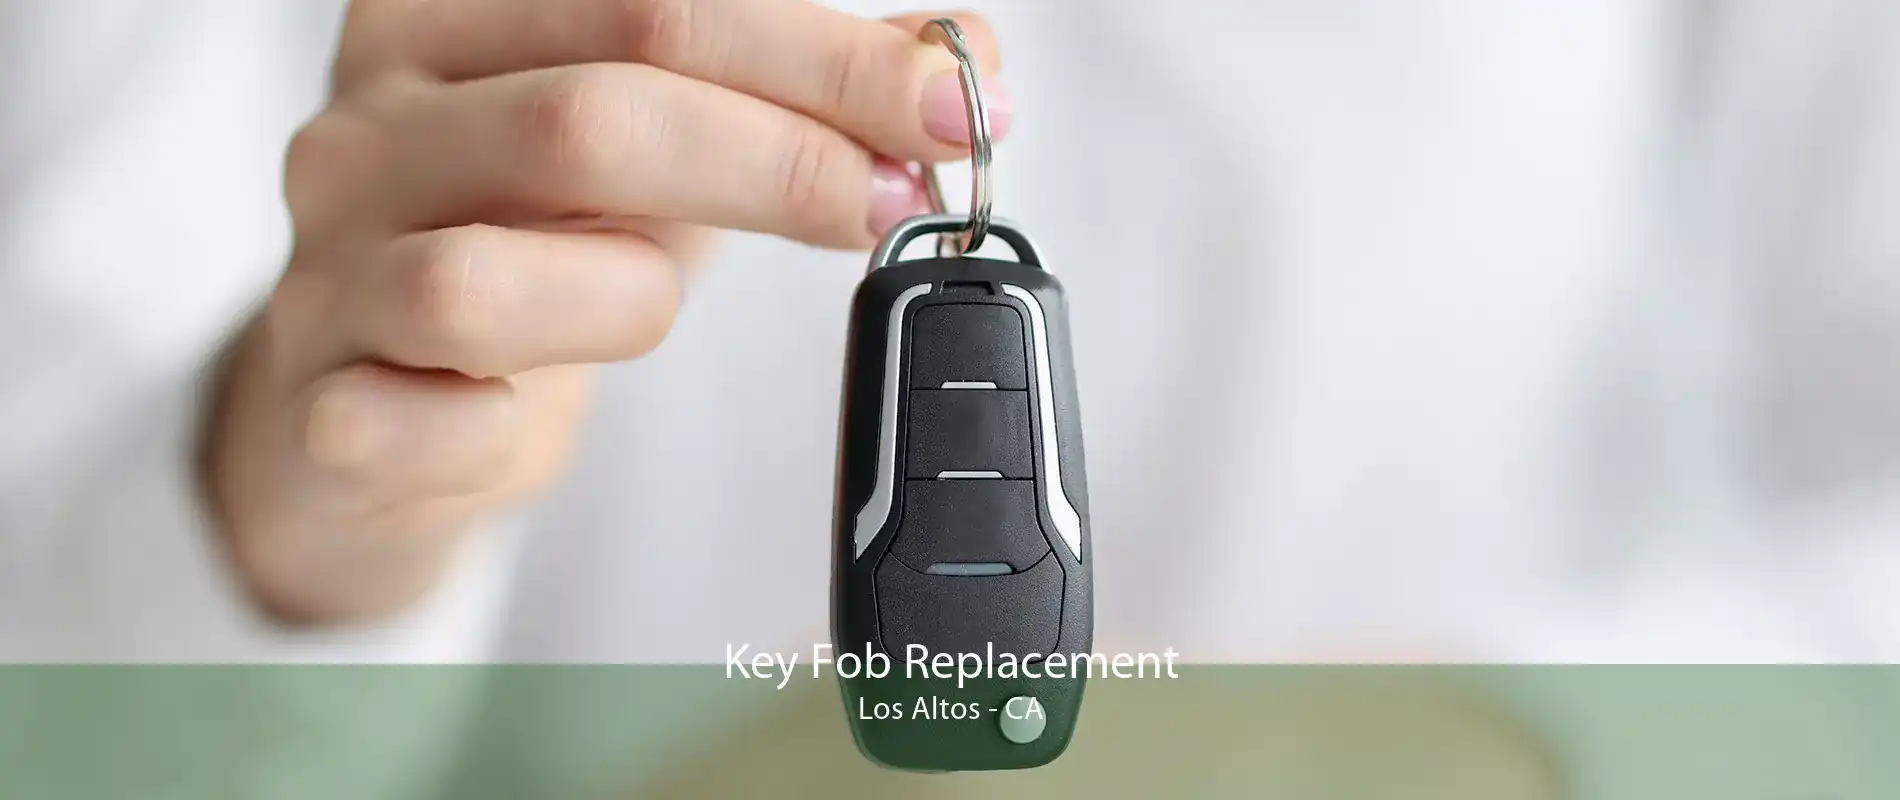 Key Fob Replacement Los Altos - CA